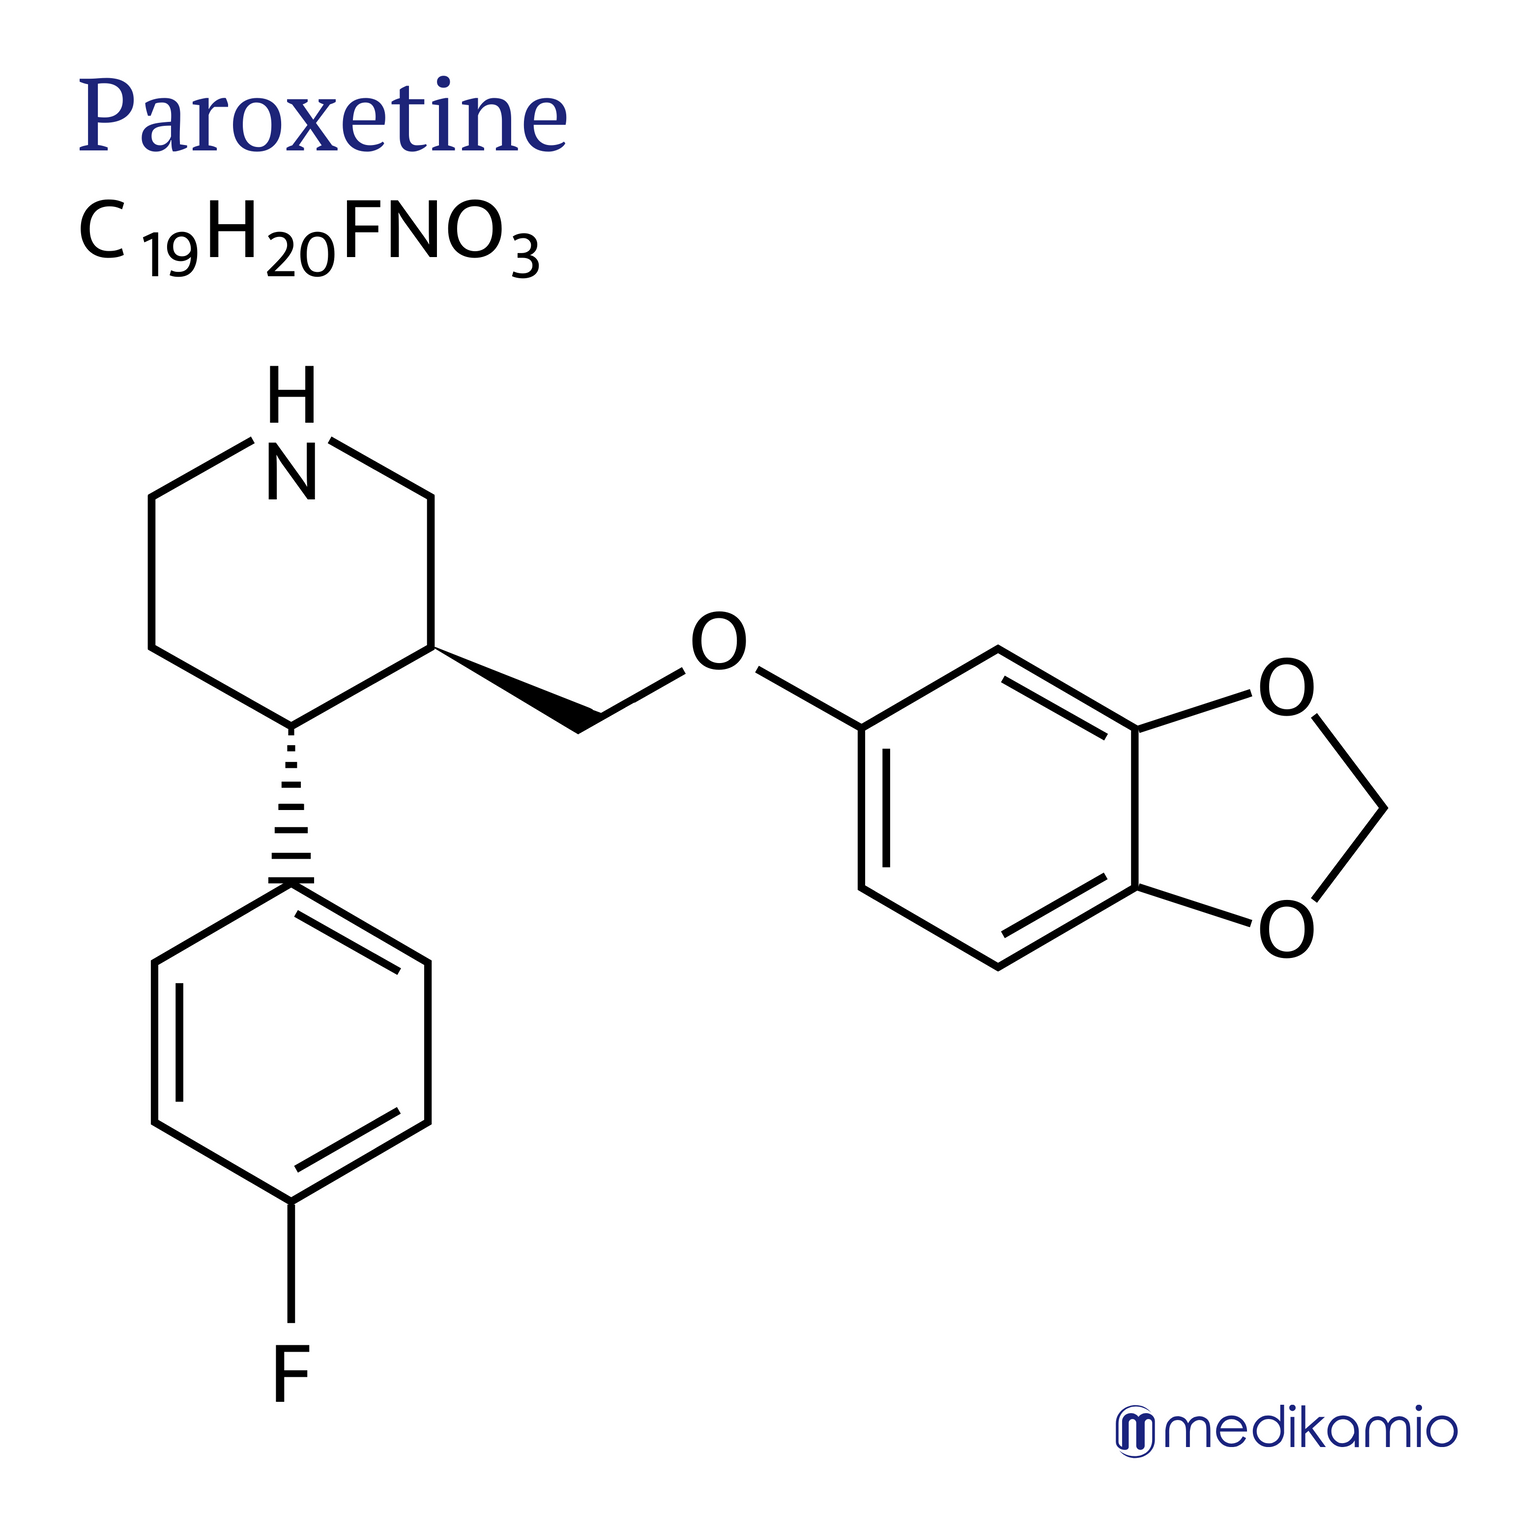 Fórmula estructural gráfica del principio activo paroxetina